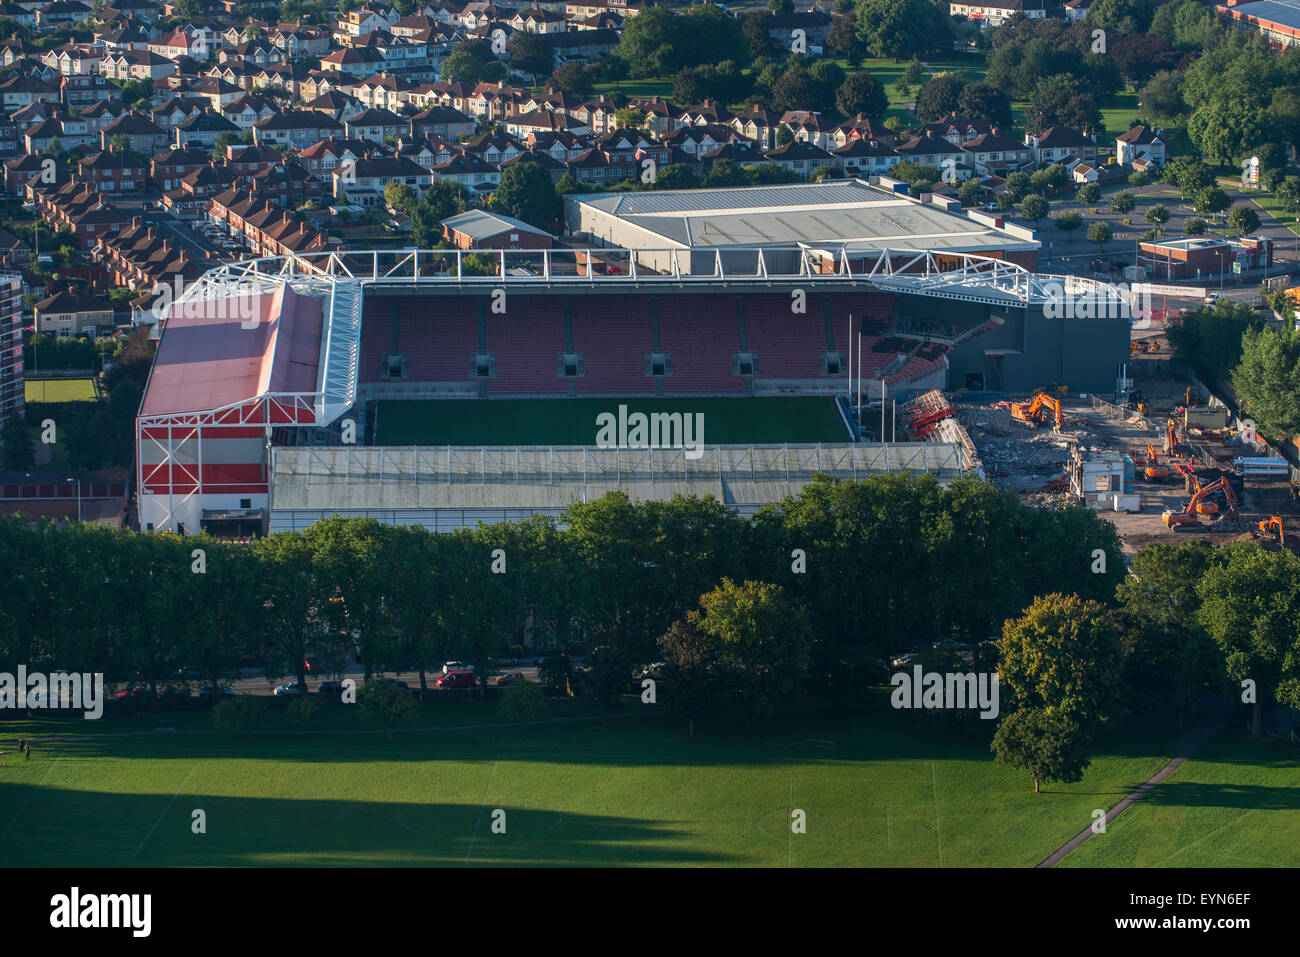 Una vista aérea de Ashton Gate Stadium el estadio del club de fútbol de la ciudad de Bristol, Bristol Rugby Club. Foto de stock